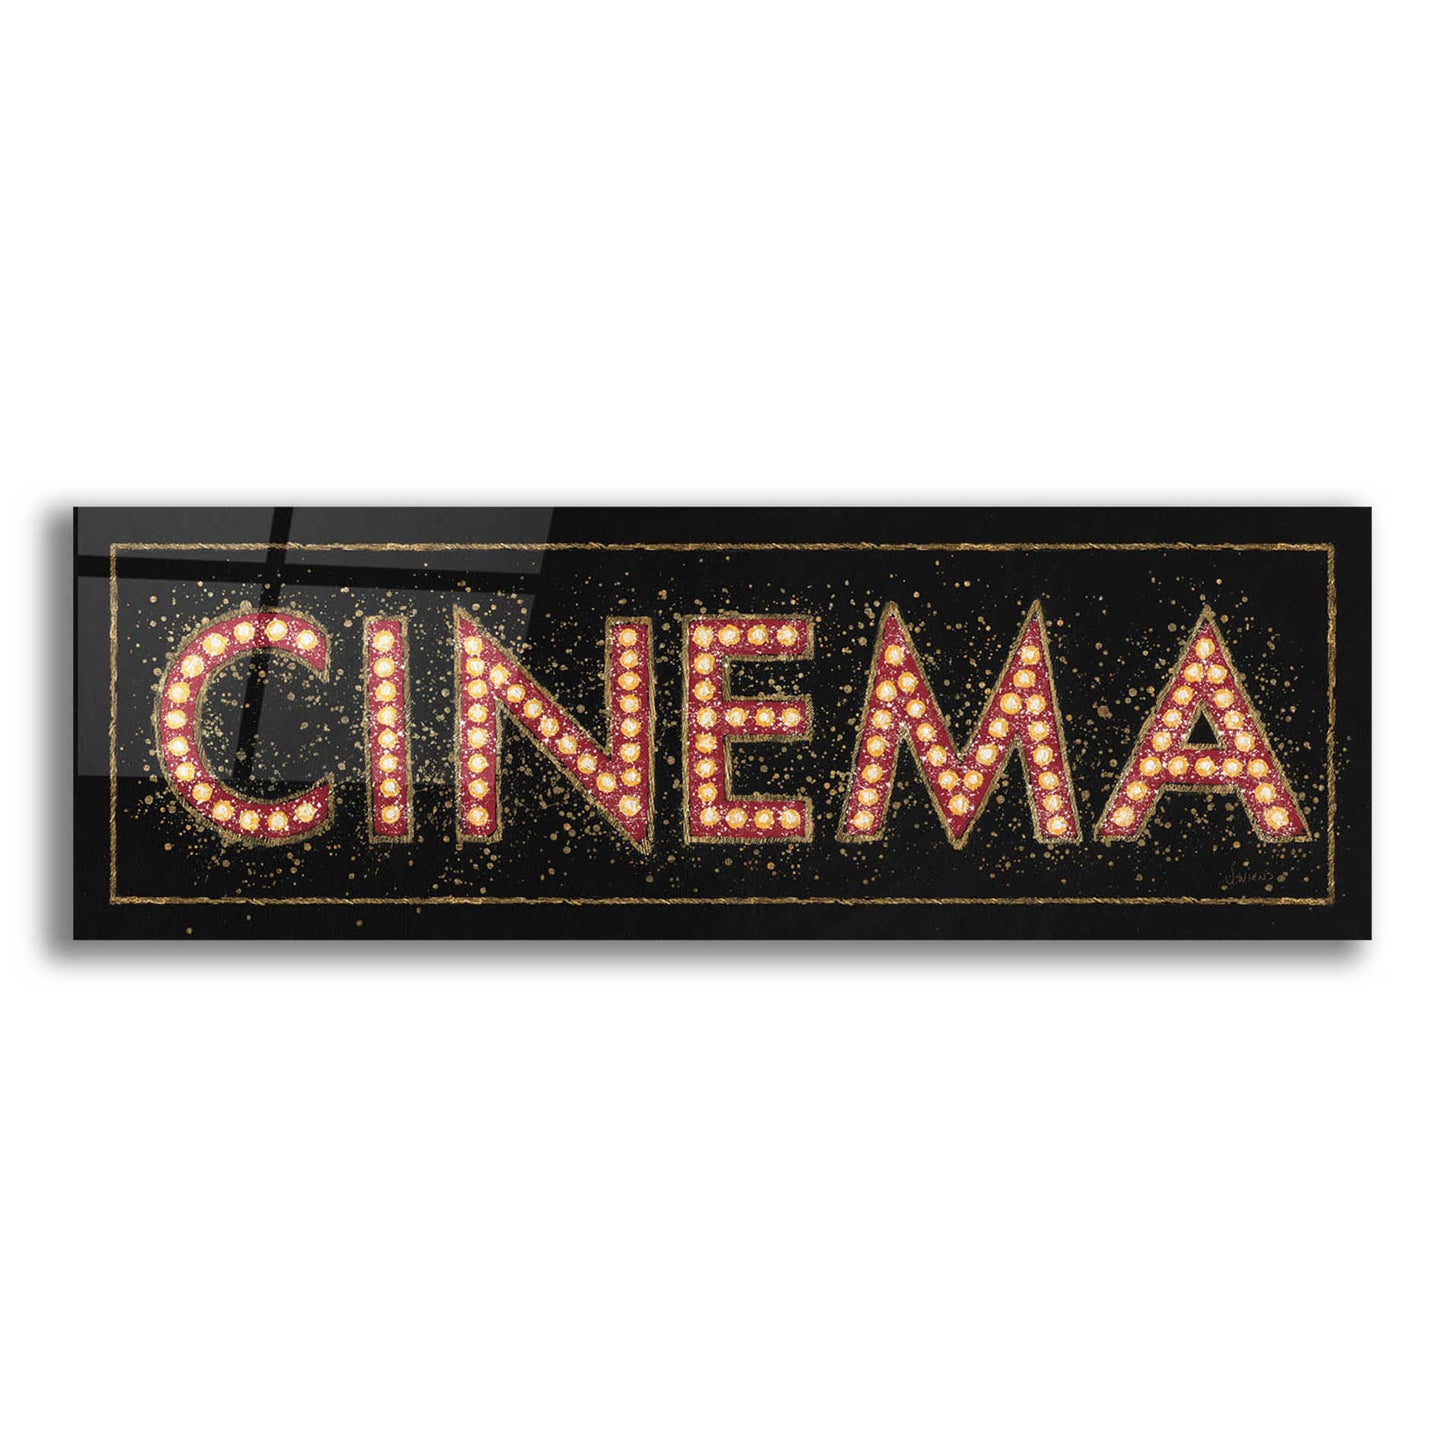 Epic Art 'Cinema Marquee' by James Wiens, Acrylic Glass Wall Art,36x12x1.74x0,60x20x1.74x0